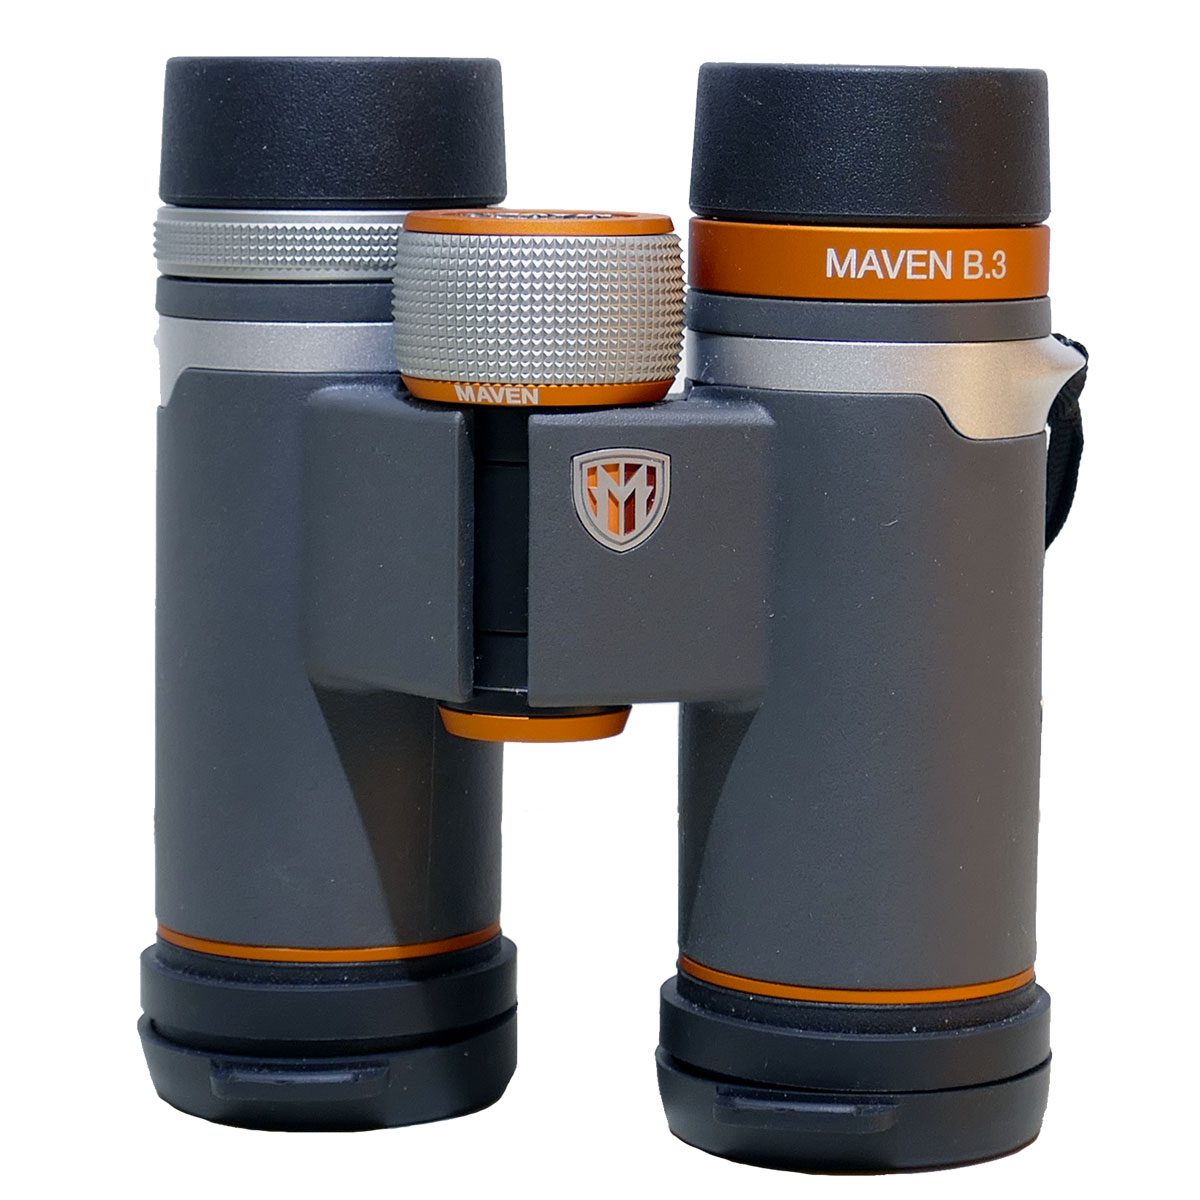 Gray and orange binoculars